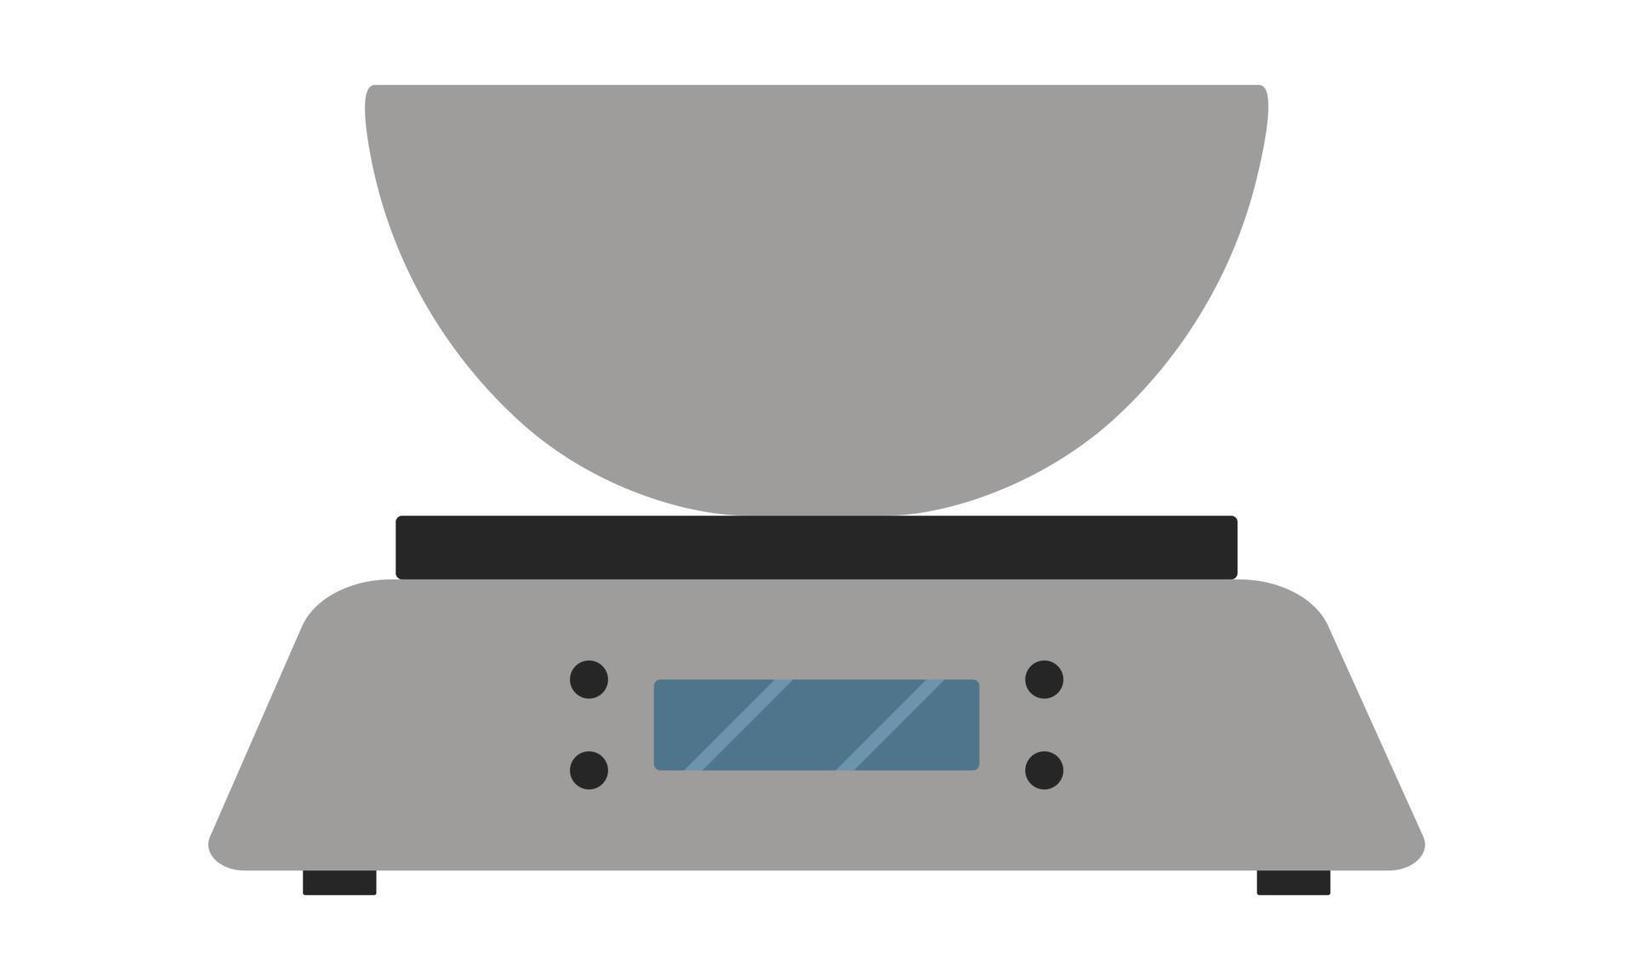 elektronisch keuken balans met een weging tank. keuken toestel voor het bepalen van de gewicht van producten. vlak stijl. vector illustratie